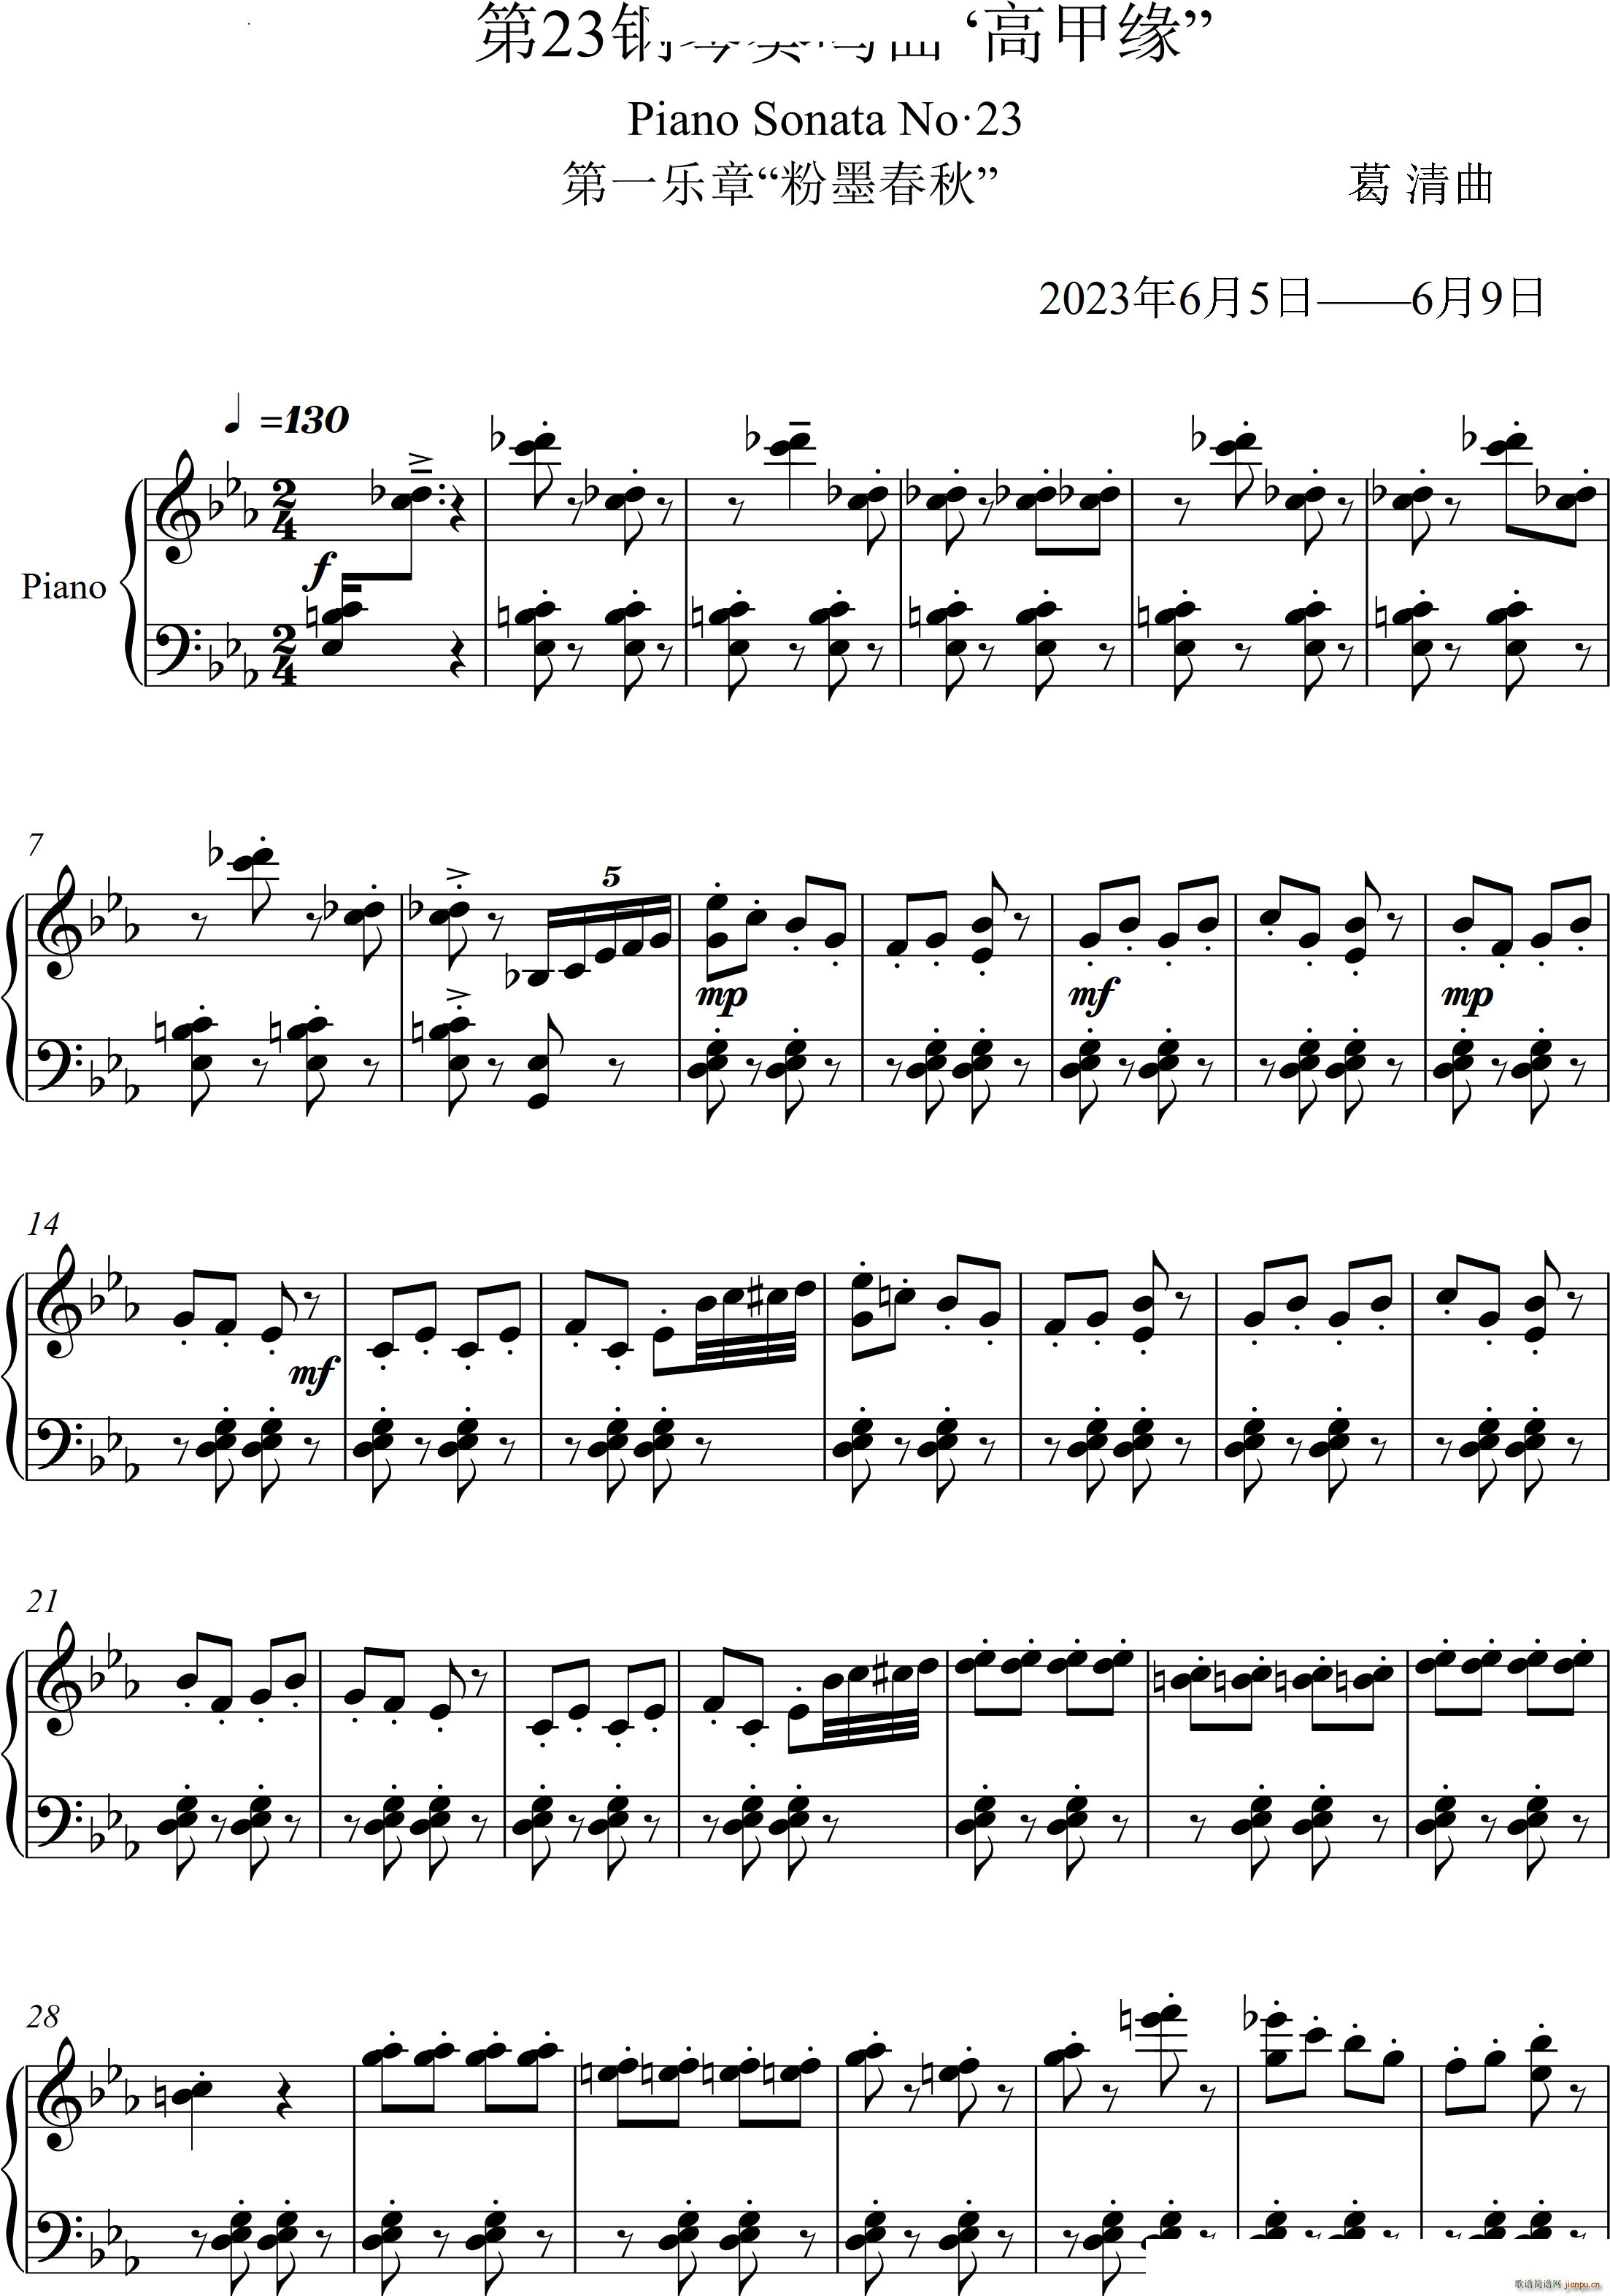 第23钢琴奏鸣曲 高甲缘 Piano Sonata No 23三个乐章(钢琴谱)1